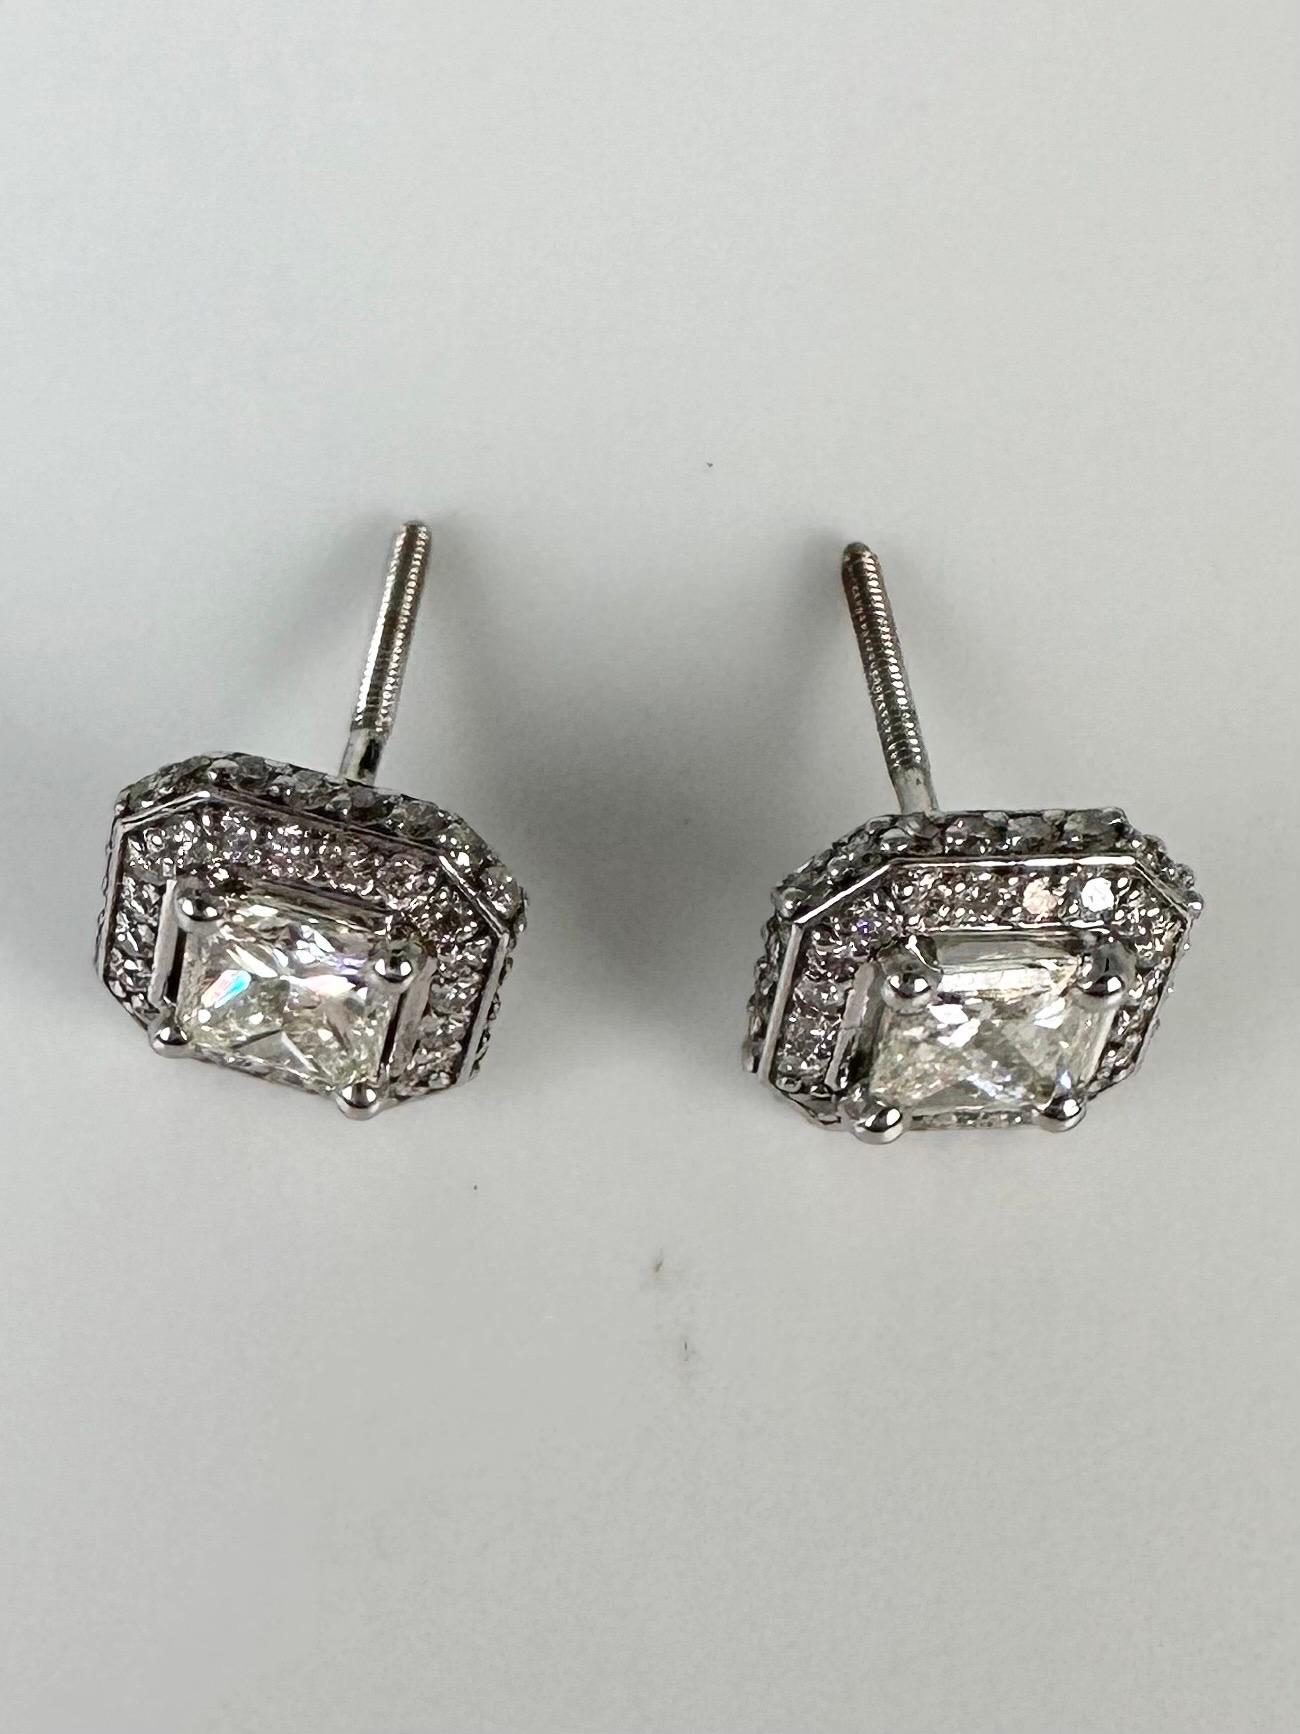 Princess Cut Fancy princess cut diamond stud earrings 1ct 14kt white gold stud earrings For Sale